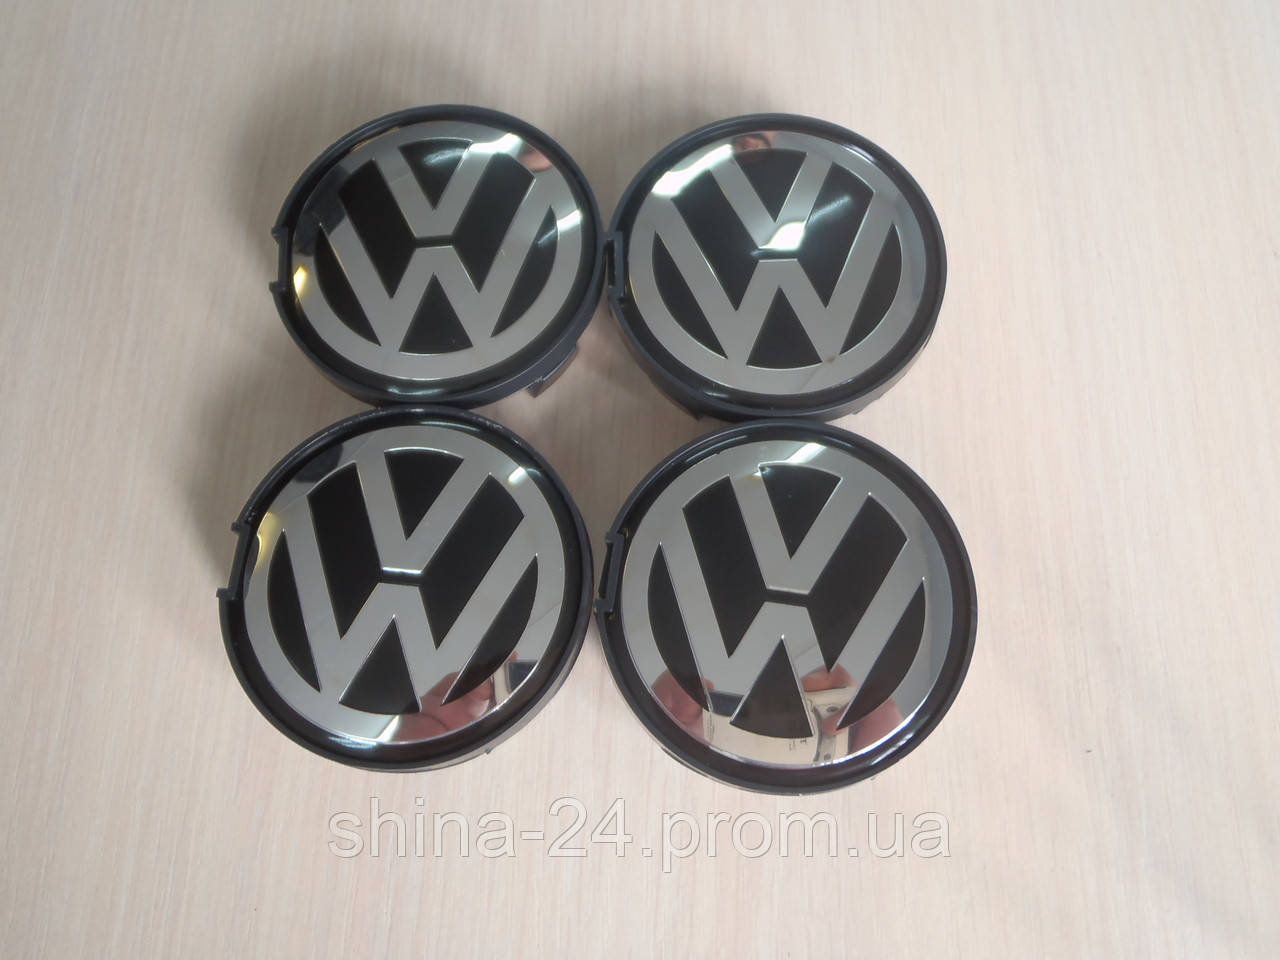 Колпачки заглушки на литые диски Volkswagen/Фолцваген 7D0 601 165 63/5